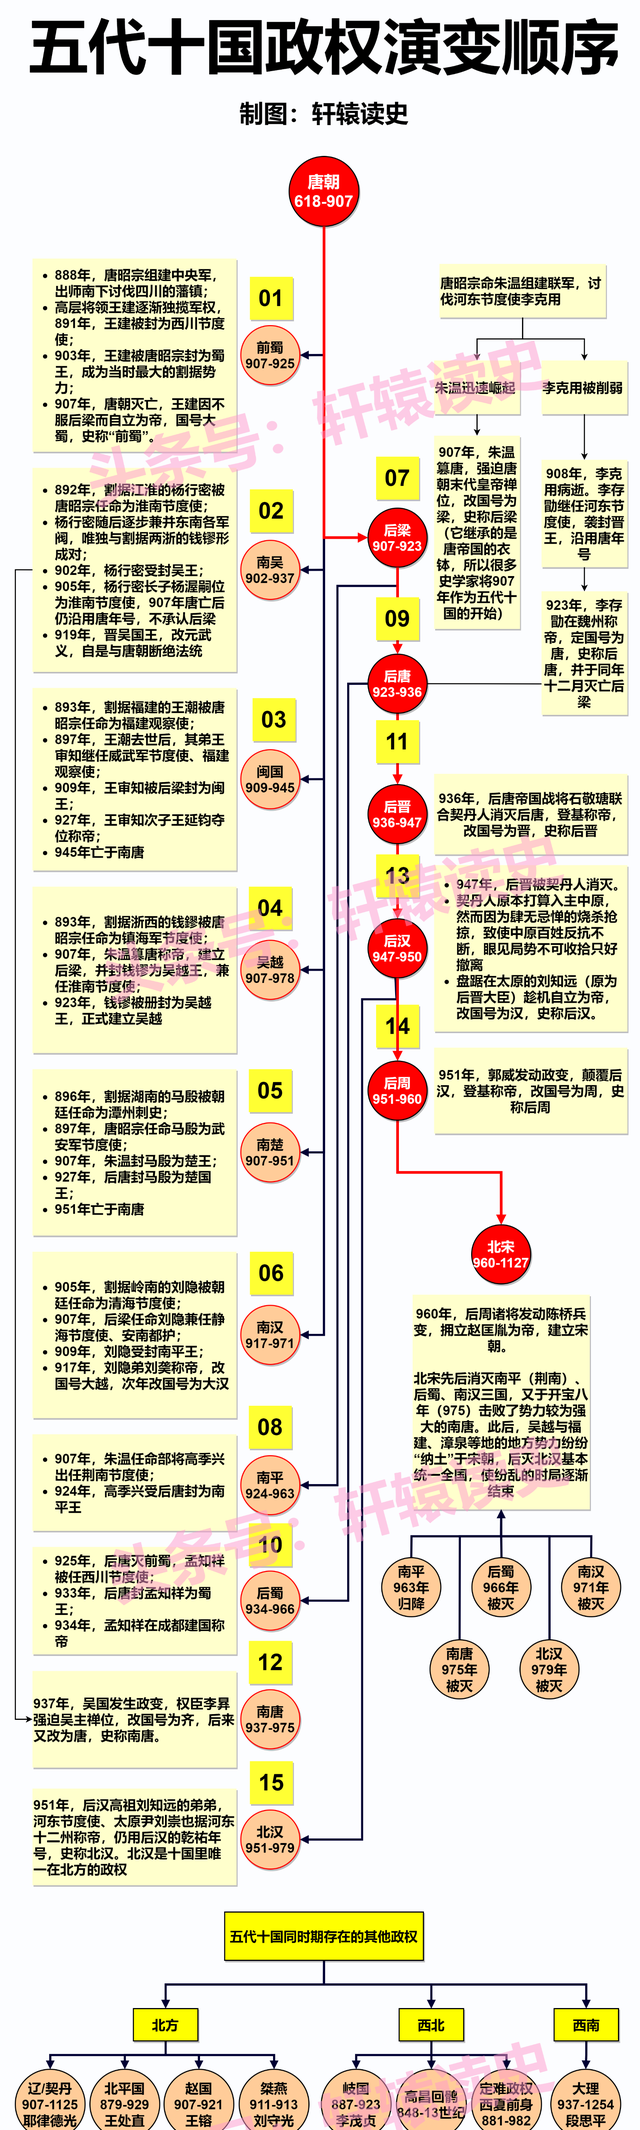 12张长图看懂中国历史上的4次大动荡时代